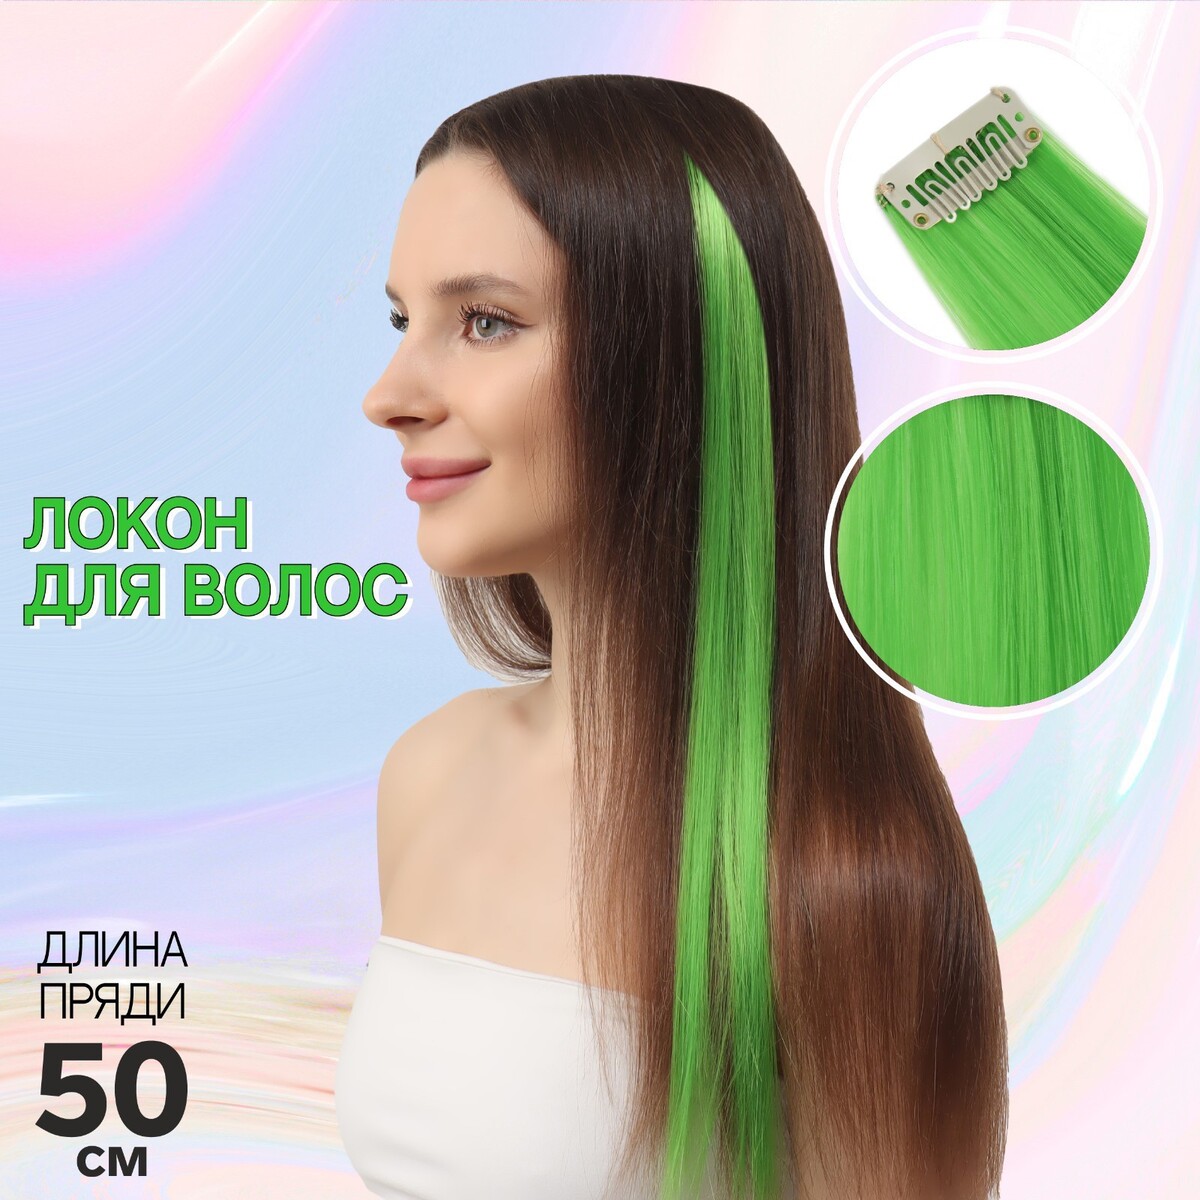 Локон накладной, прямой волос, на заколке, 50 см, 5 гр, цвет зеленый локон накладной прямой волос на заколке 50 см 5 гр бирюзовый